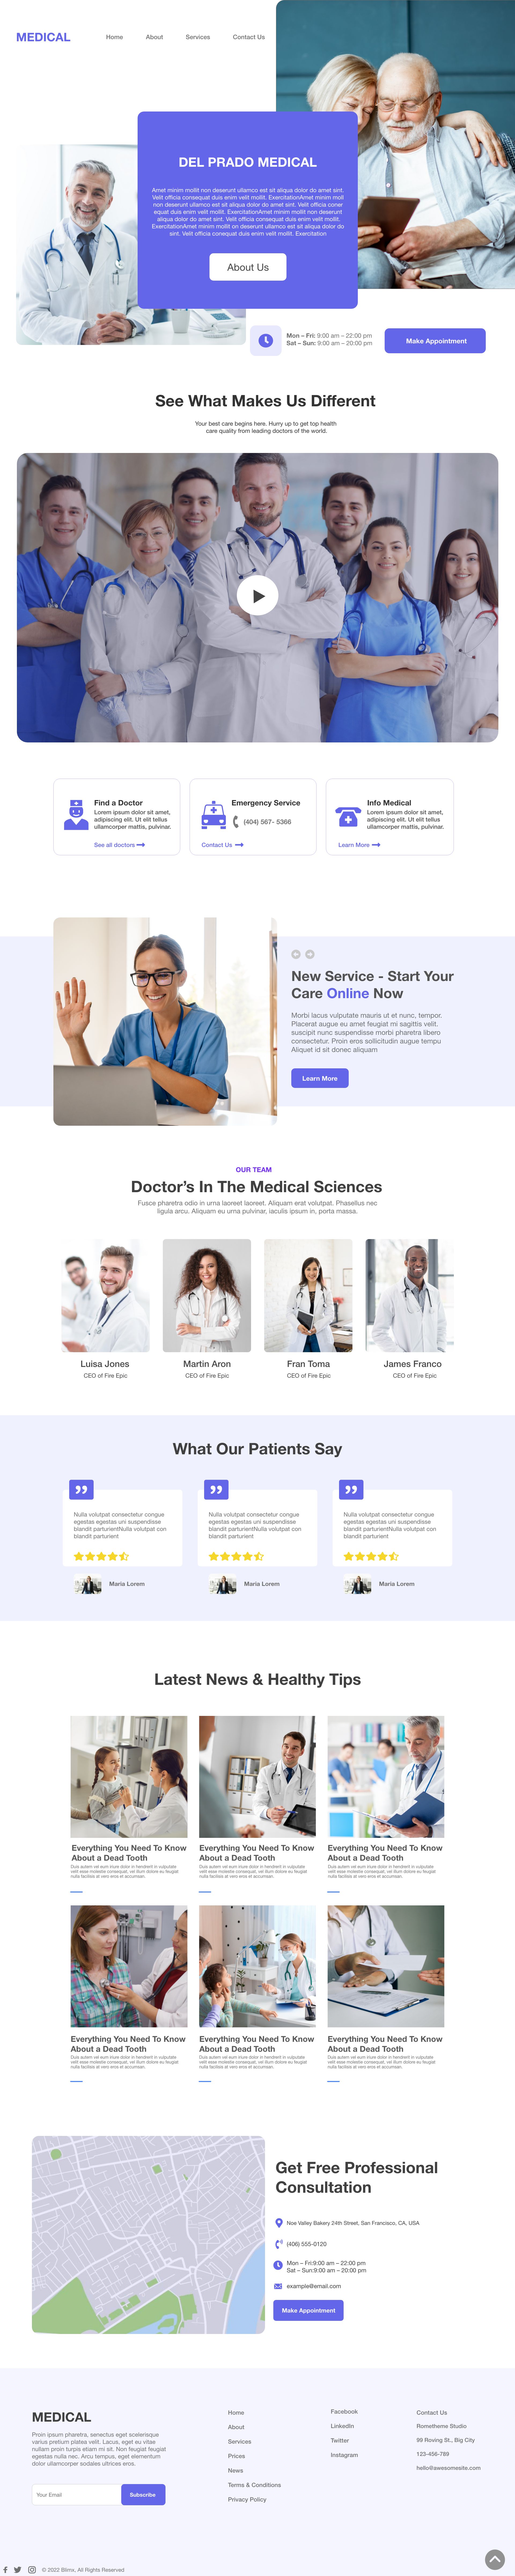 Medical Services Website Design